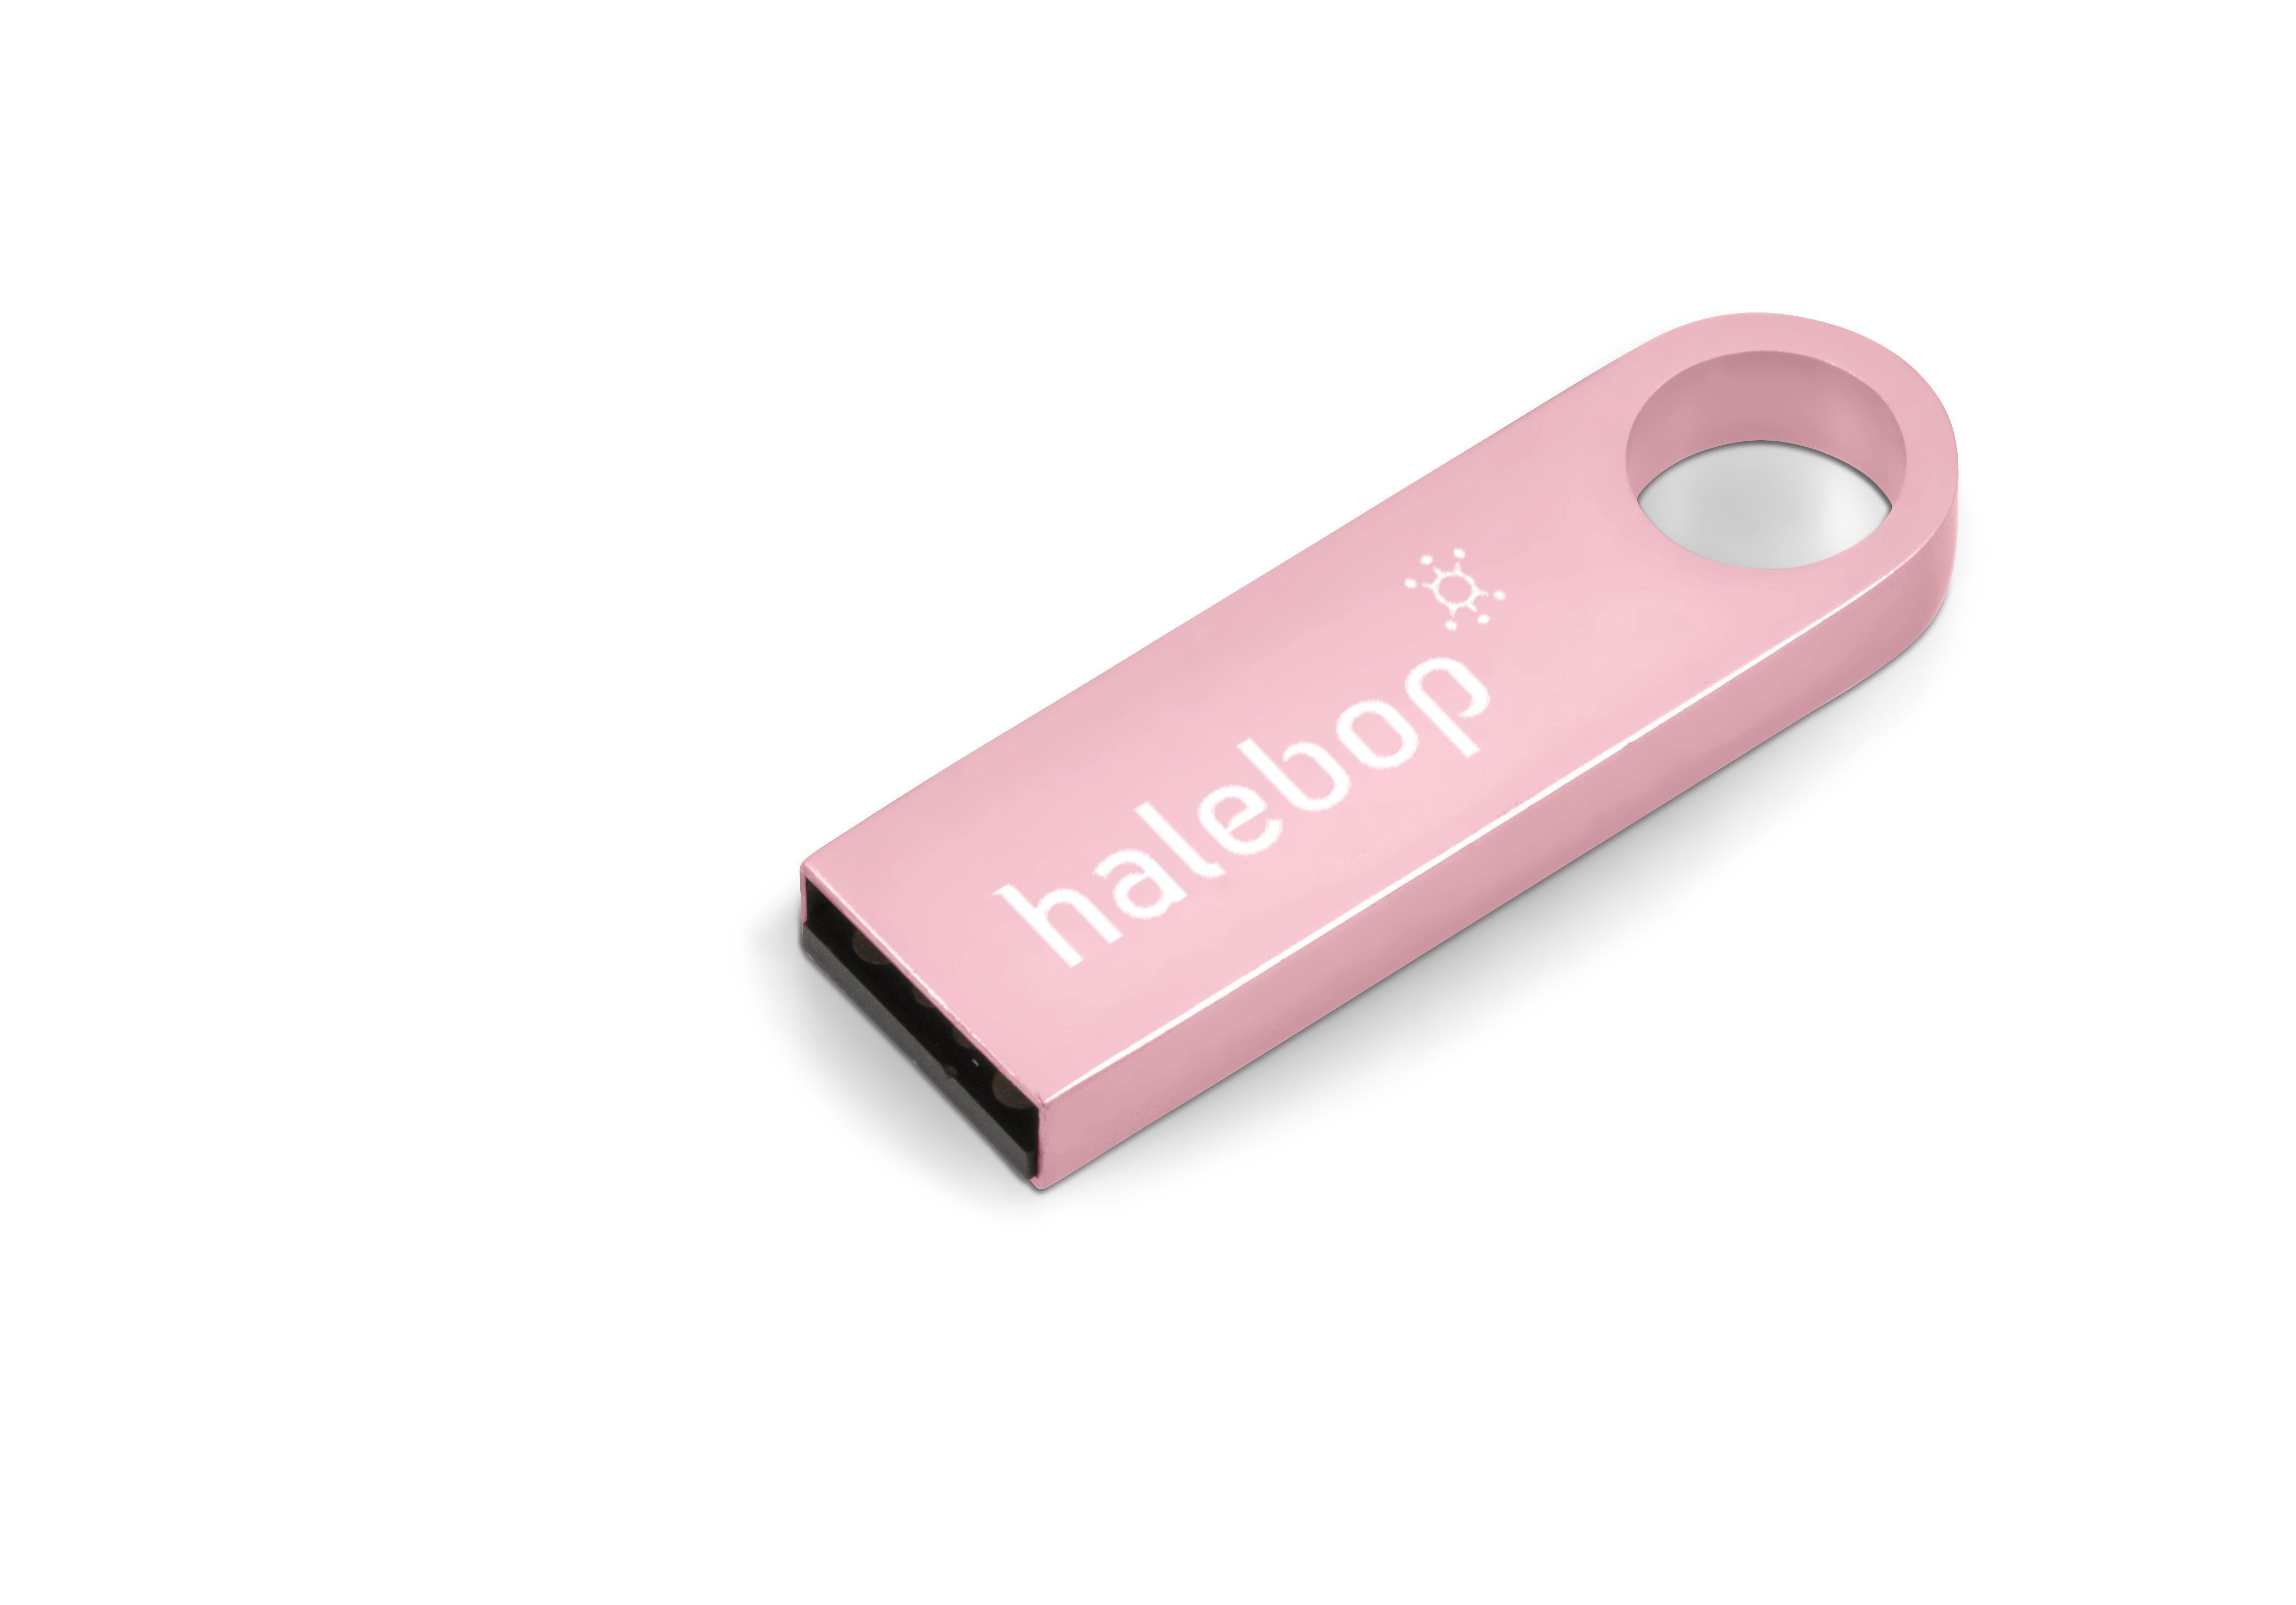 Vega Memory Stick - 16GB - Pink Only-16GB-Pink-PI